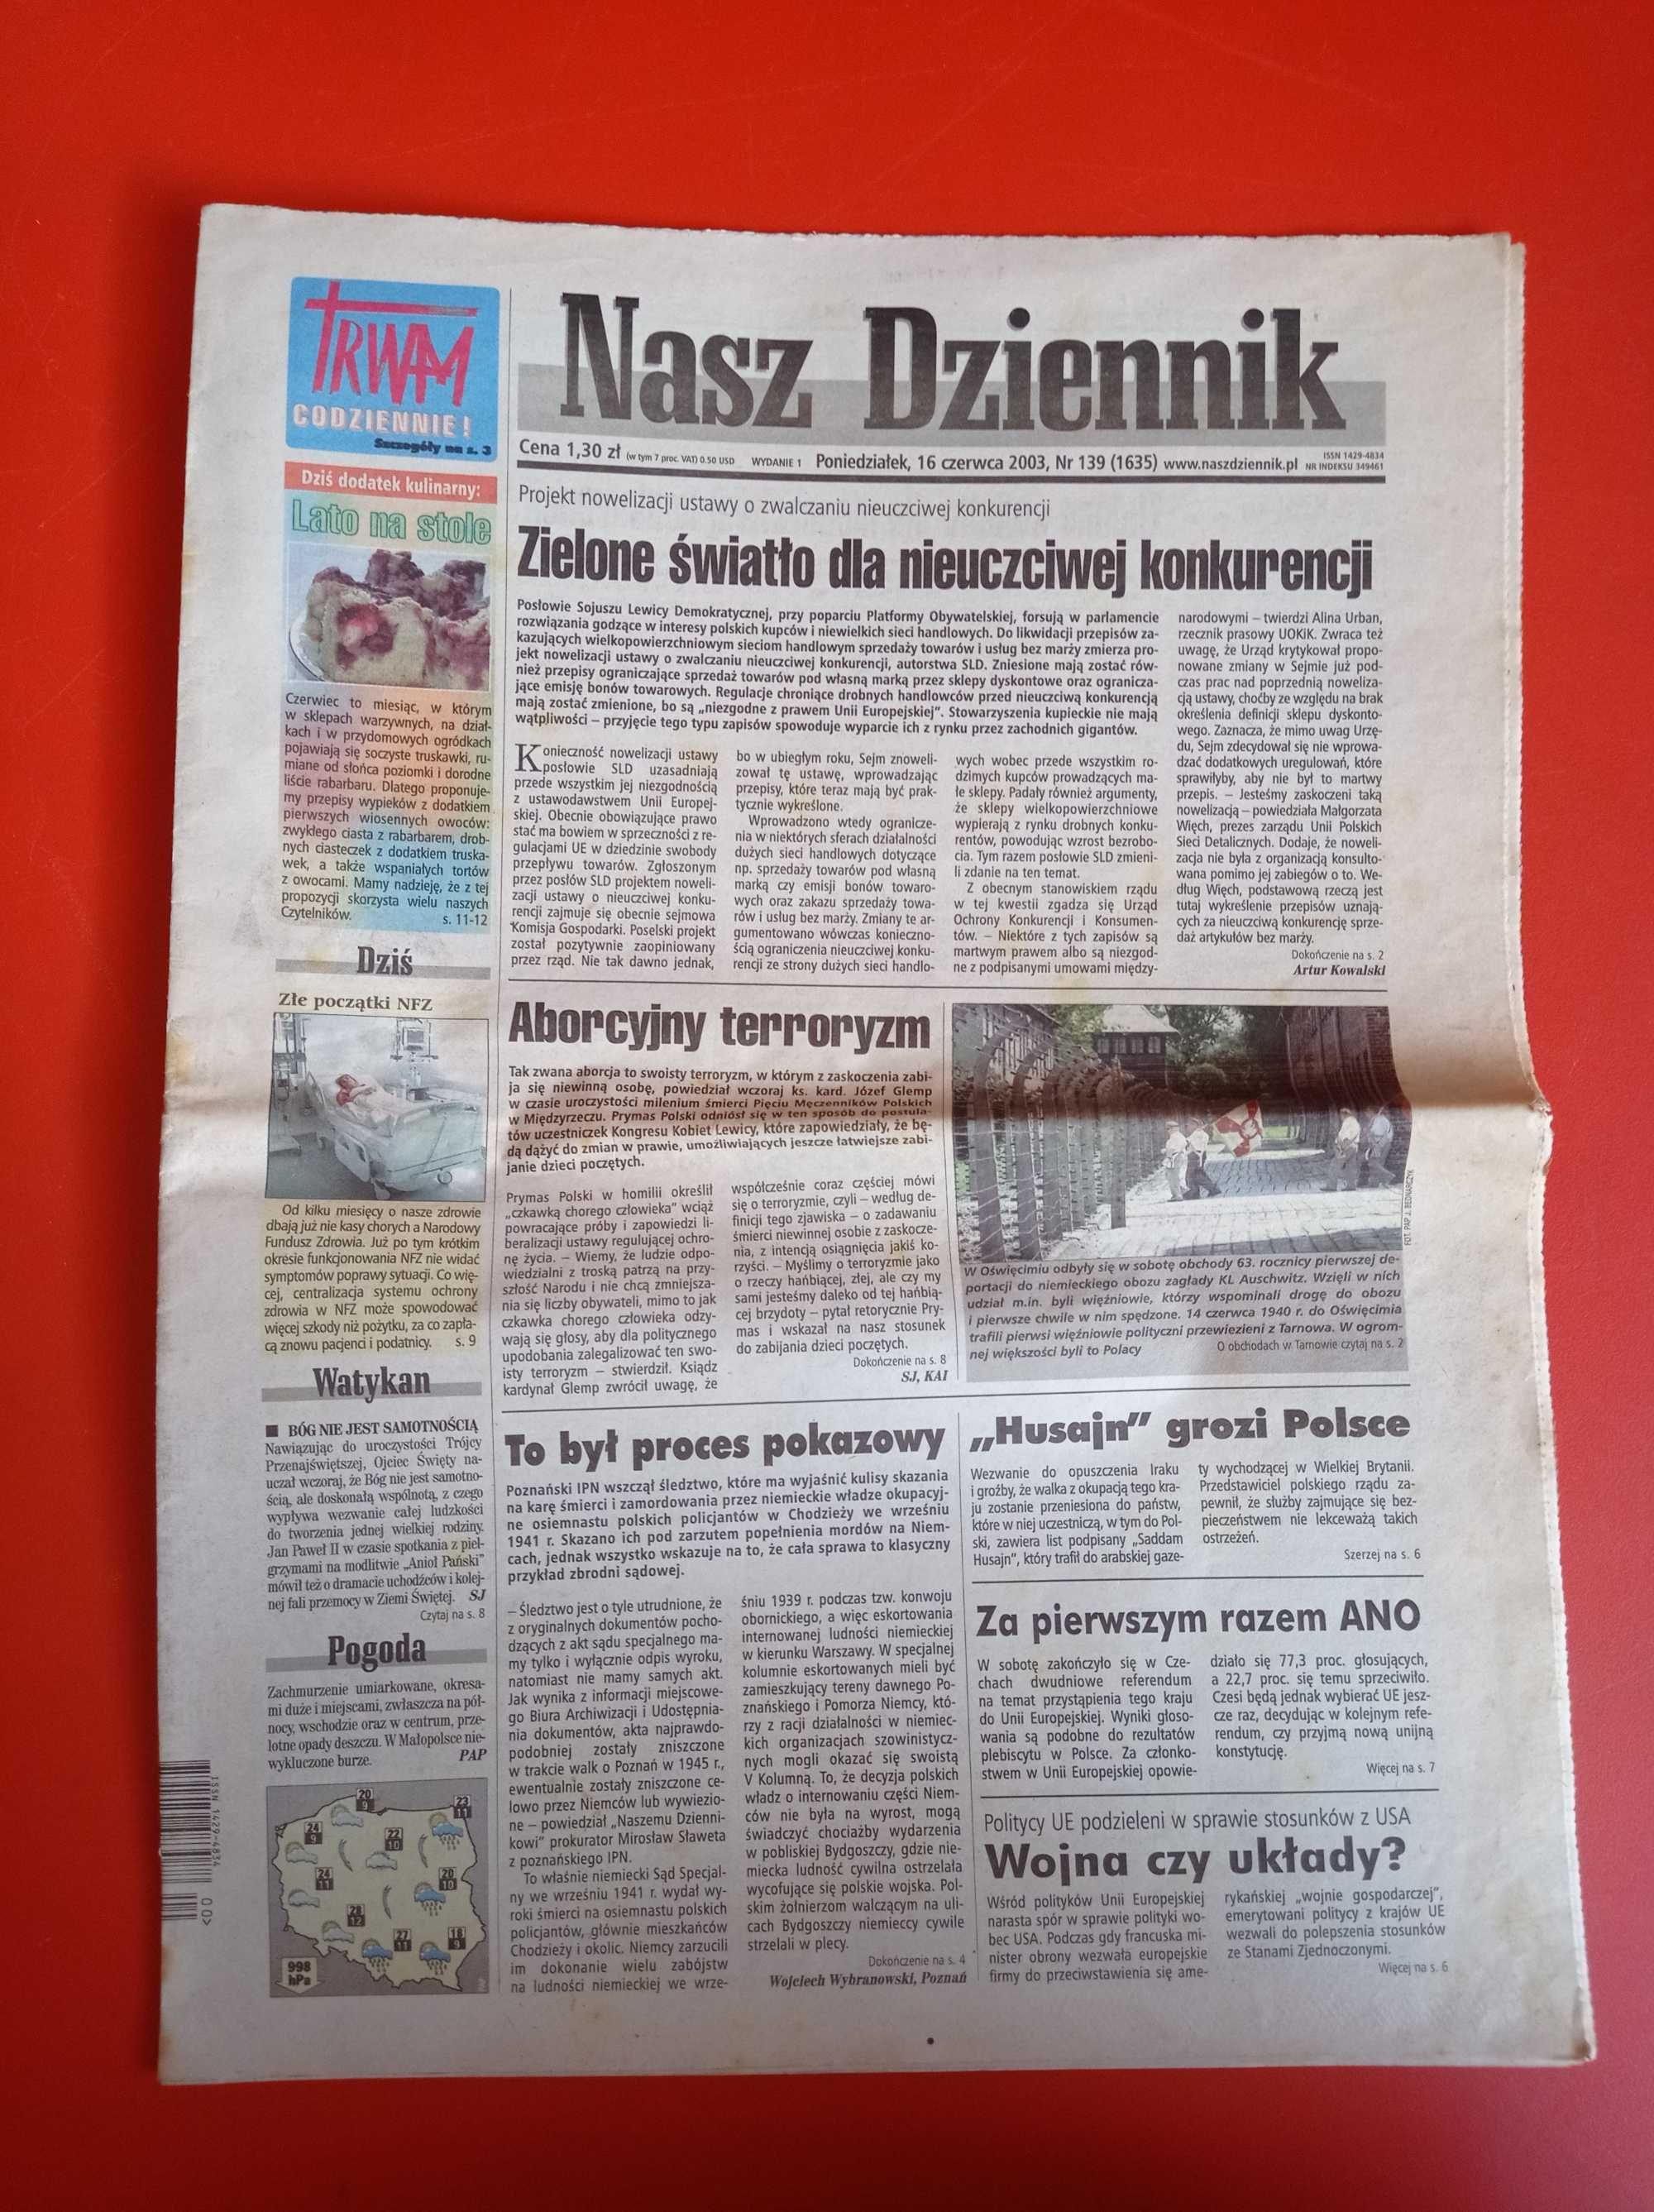 Nasz Dziennik, nr 139/2003, 16 czerwca 2003